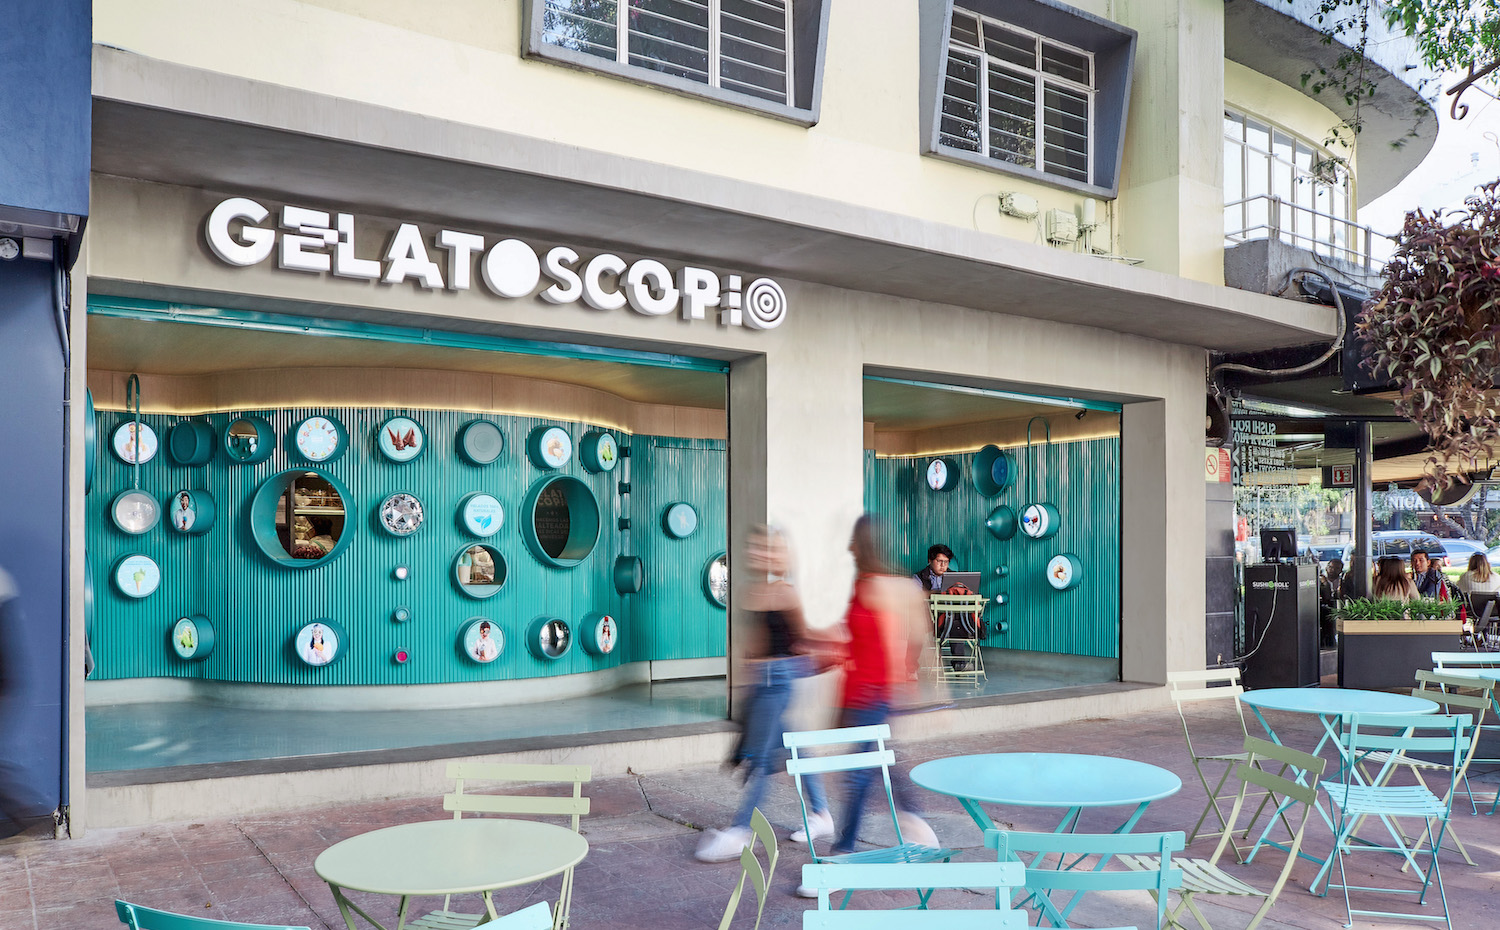 Gelatoscopio. Gelatoscopio presume de una terraza en plena calle para que los clientes puedan saborear su oferta de helados al aire libre